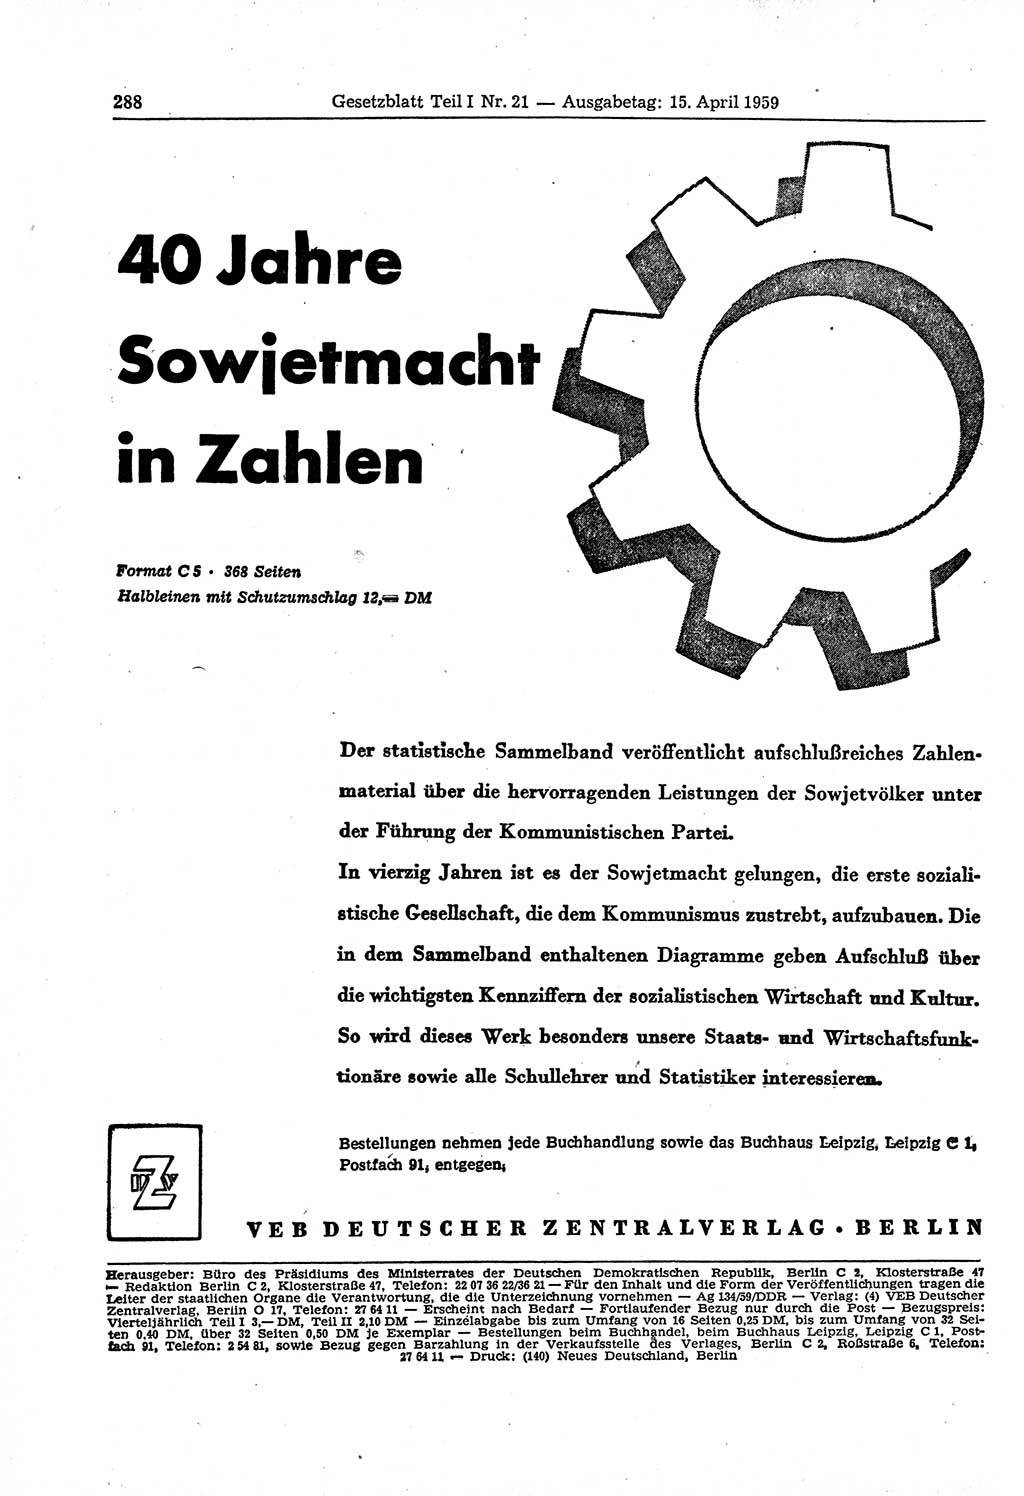 Gesetzblatt (GBl.) der Deutschen Demokratischen Republik (DDR) Teil Ⅰ 1959, Seite 288 (GBl. DDR Ⅰ 1959, S. 288)